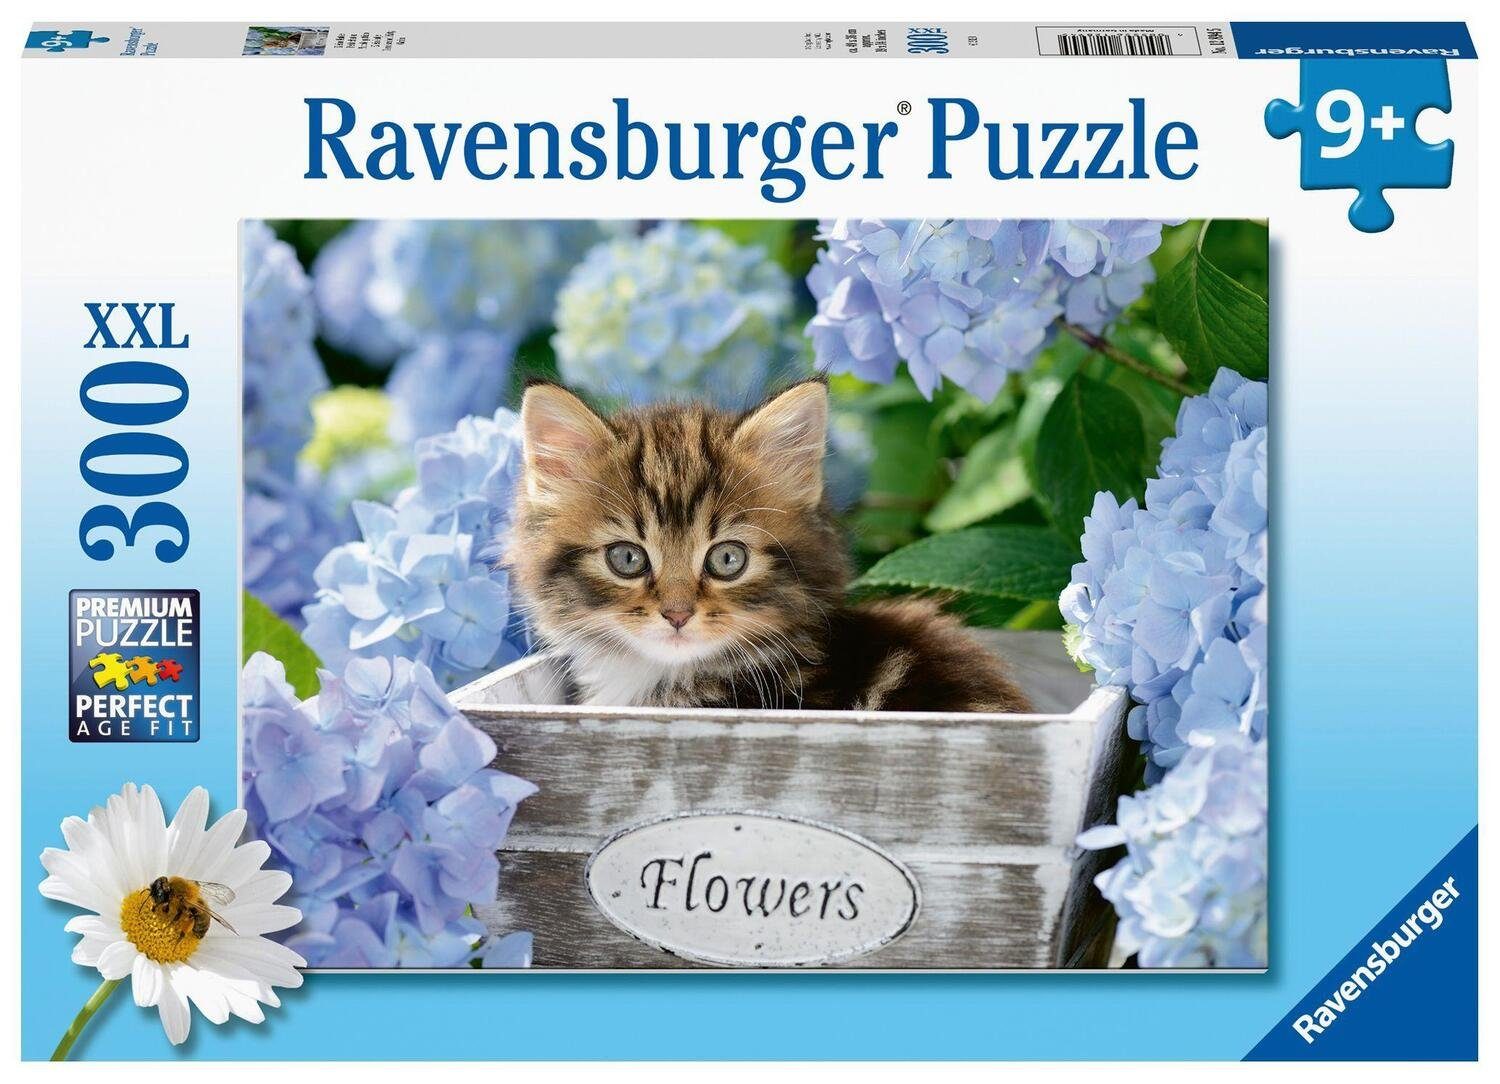 Ravensburger Puzzle Ravensburger Kinderpuzzle - 12894 Kleine Katze - Tier- Puzzle für..., 300 Puzzleteile